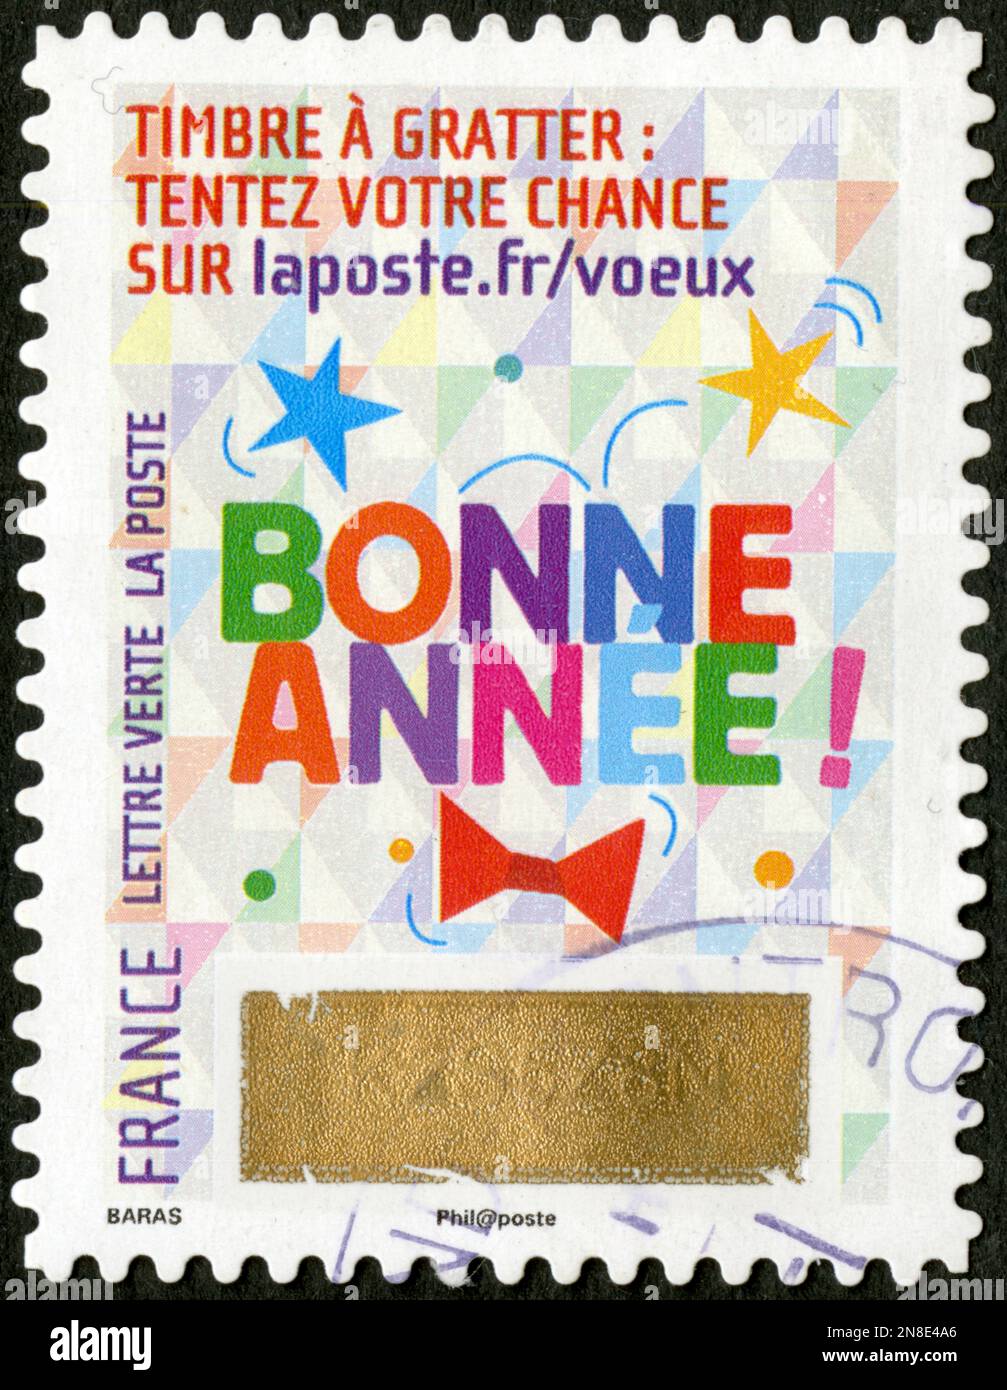 Timbre oblitéré bonne année, timbre à gratter, tentez votre chance, France,  lettre verte , La poste Photo Stock - Alamy